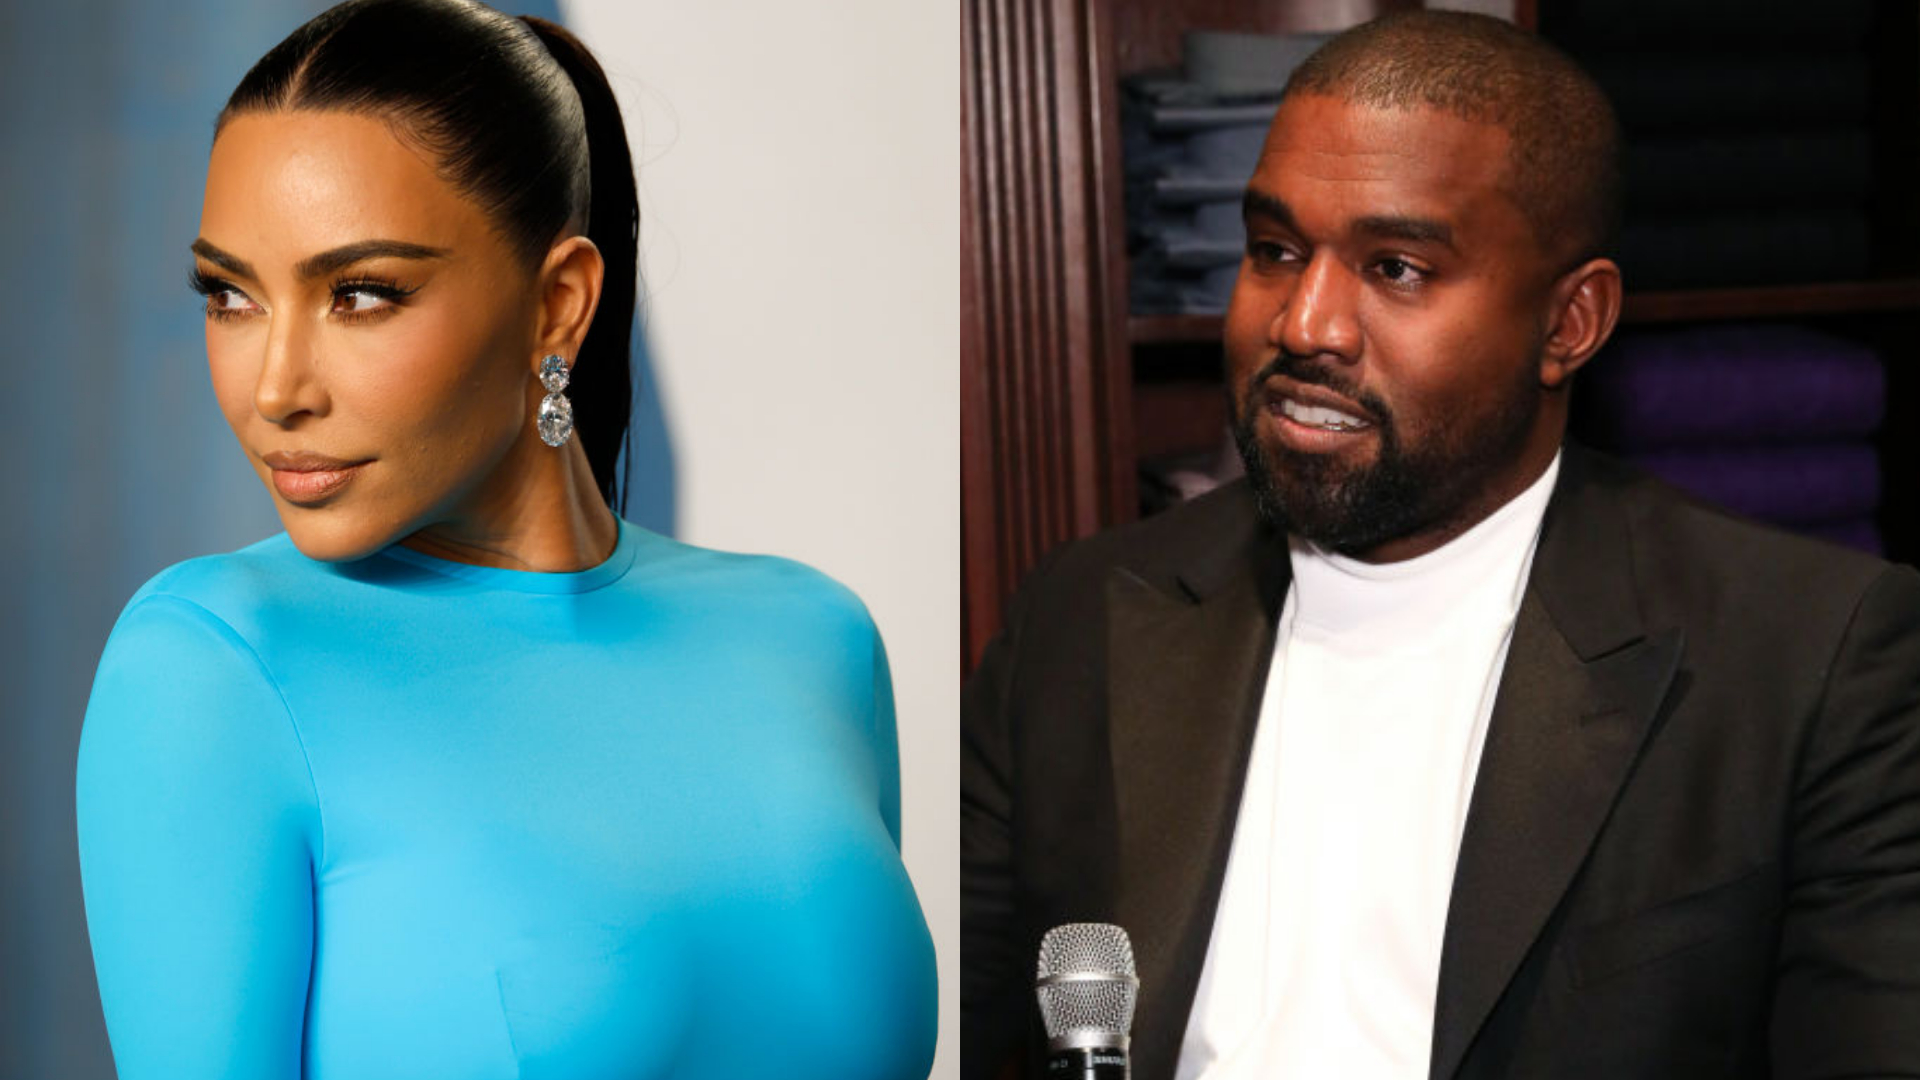 Kim Kardashian quebra silêncio sobre post e acusações de Kanye West: “Não aguento mais”